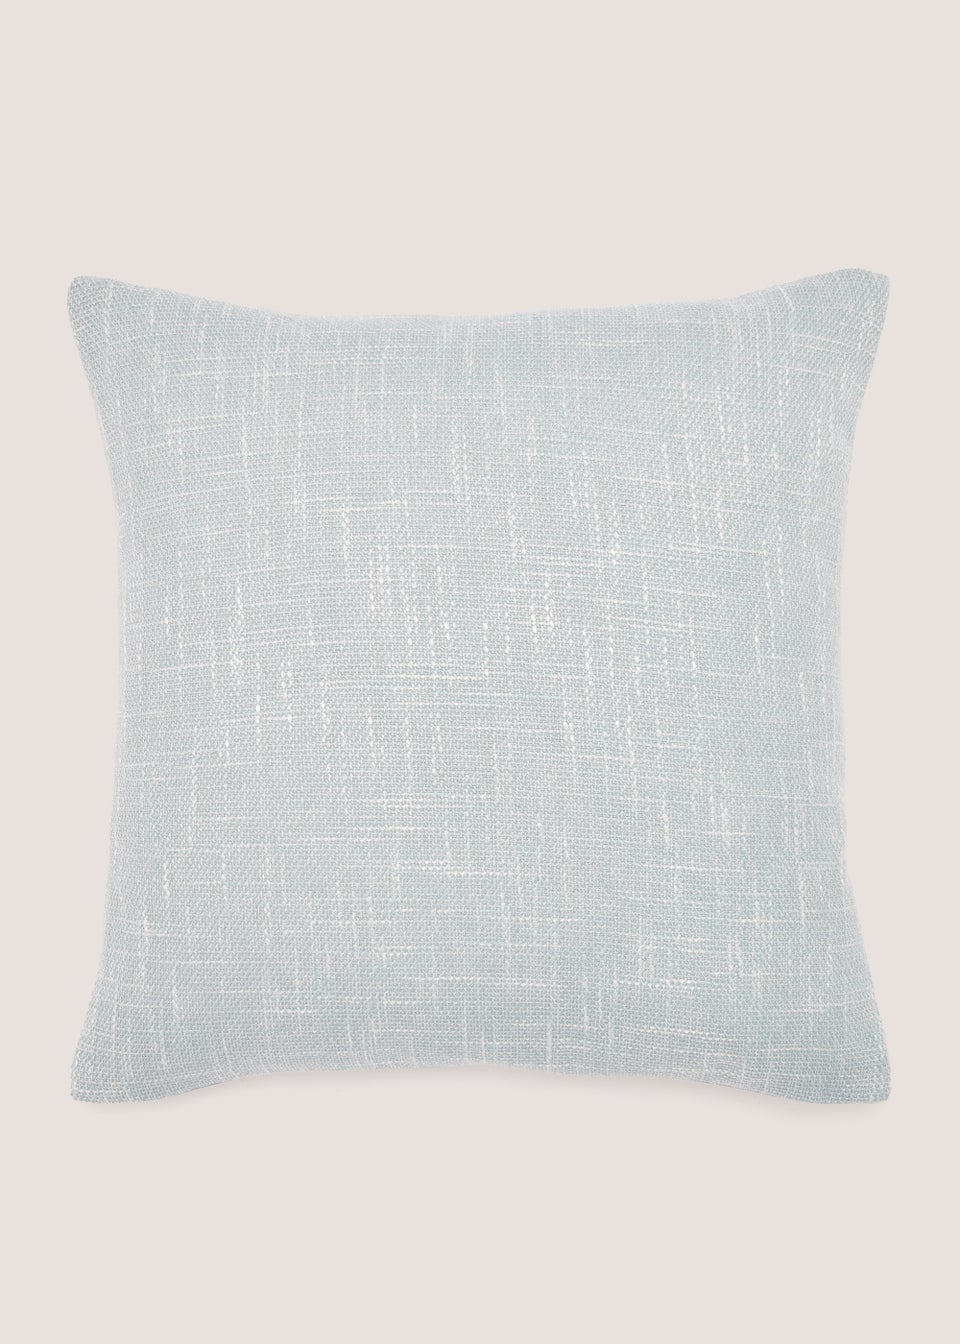 Blue Marl Textured Cushion (43cm x 43cm)